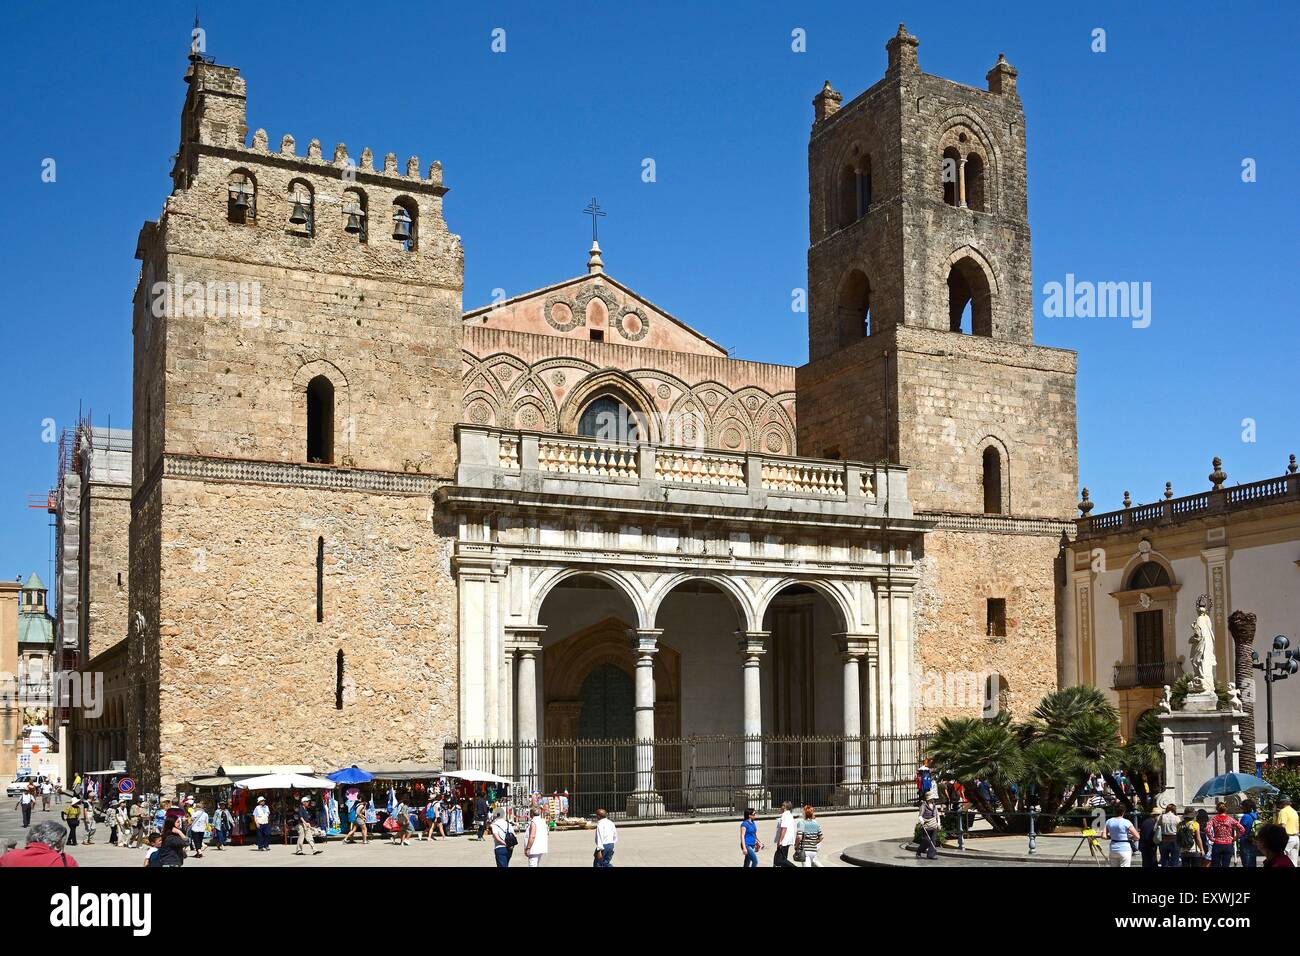 Cathedral Santa Maria Nuova, Monreale, Sicily, Italy, Europe Stock Photo